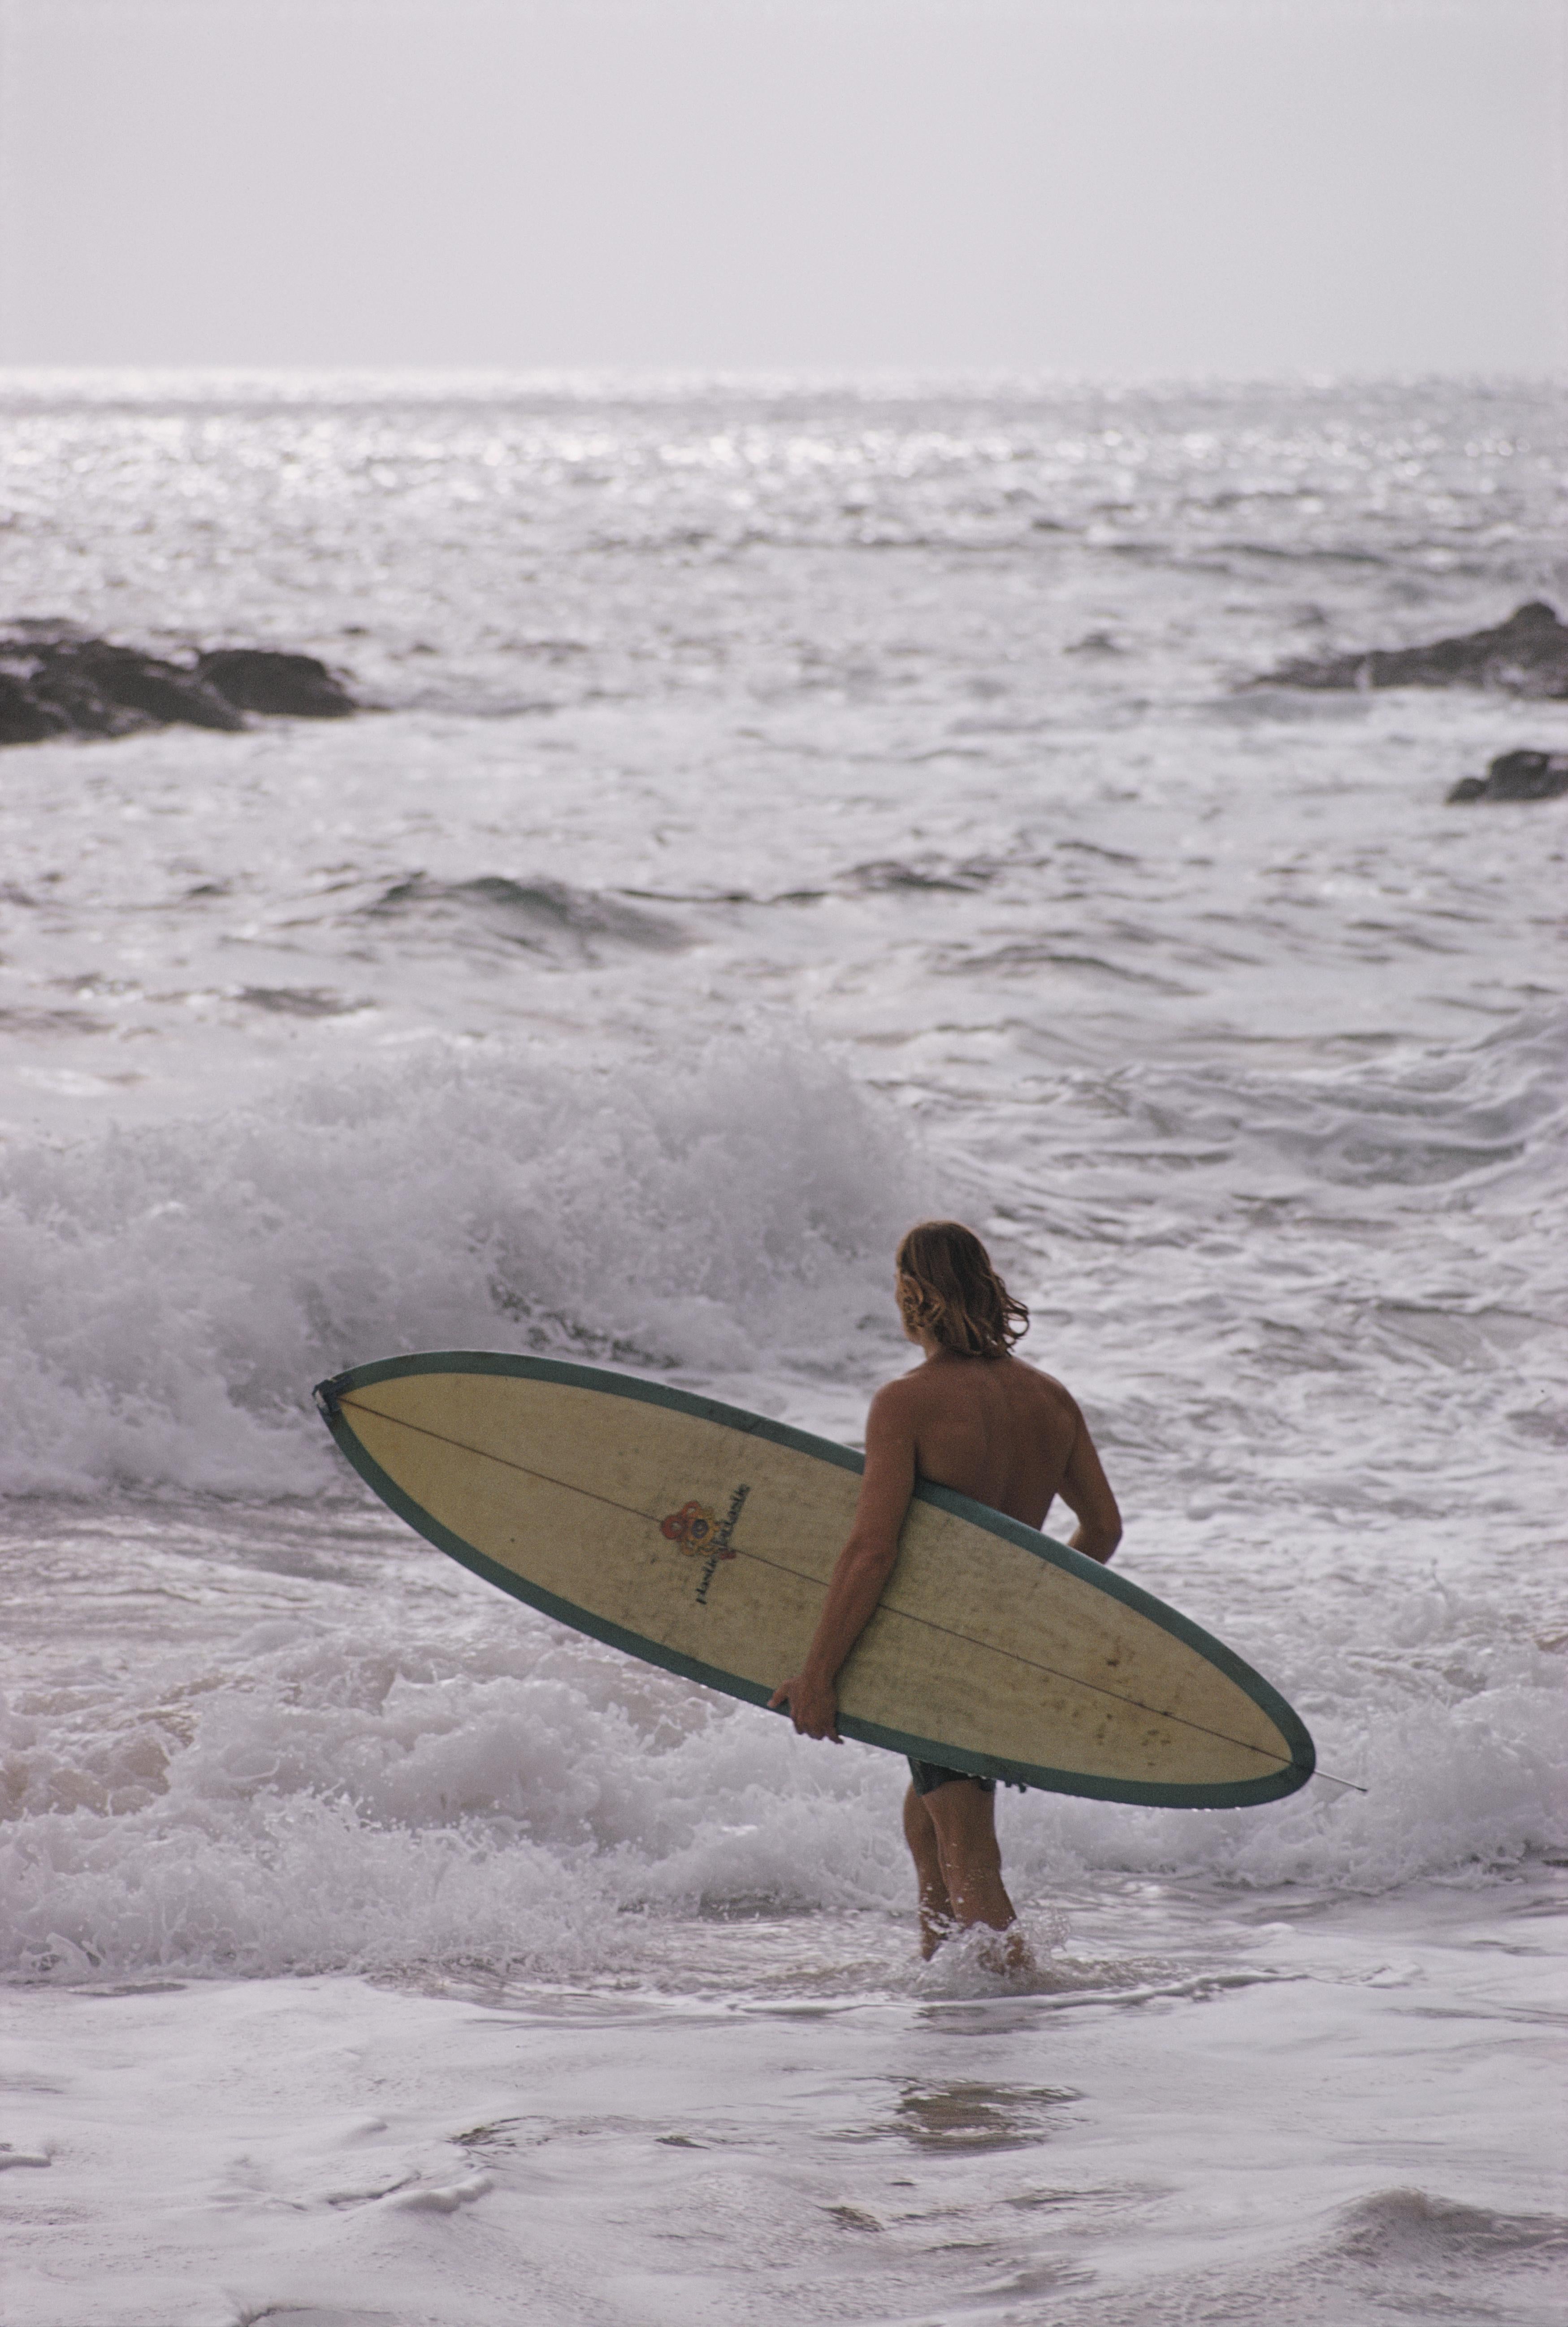 Slim Aarons
Surfeurs de Laguna Beach
1970
Impression chromogène Lambda
Édition de 150 exemplaires numérotés à la main et estampillés par la succession, avec certificat d'authenticité de la succession. 

Surfeurs à l'extérieur d'une cabine de plage à